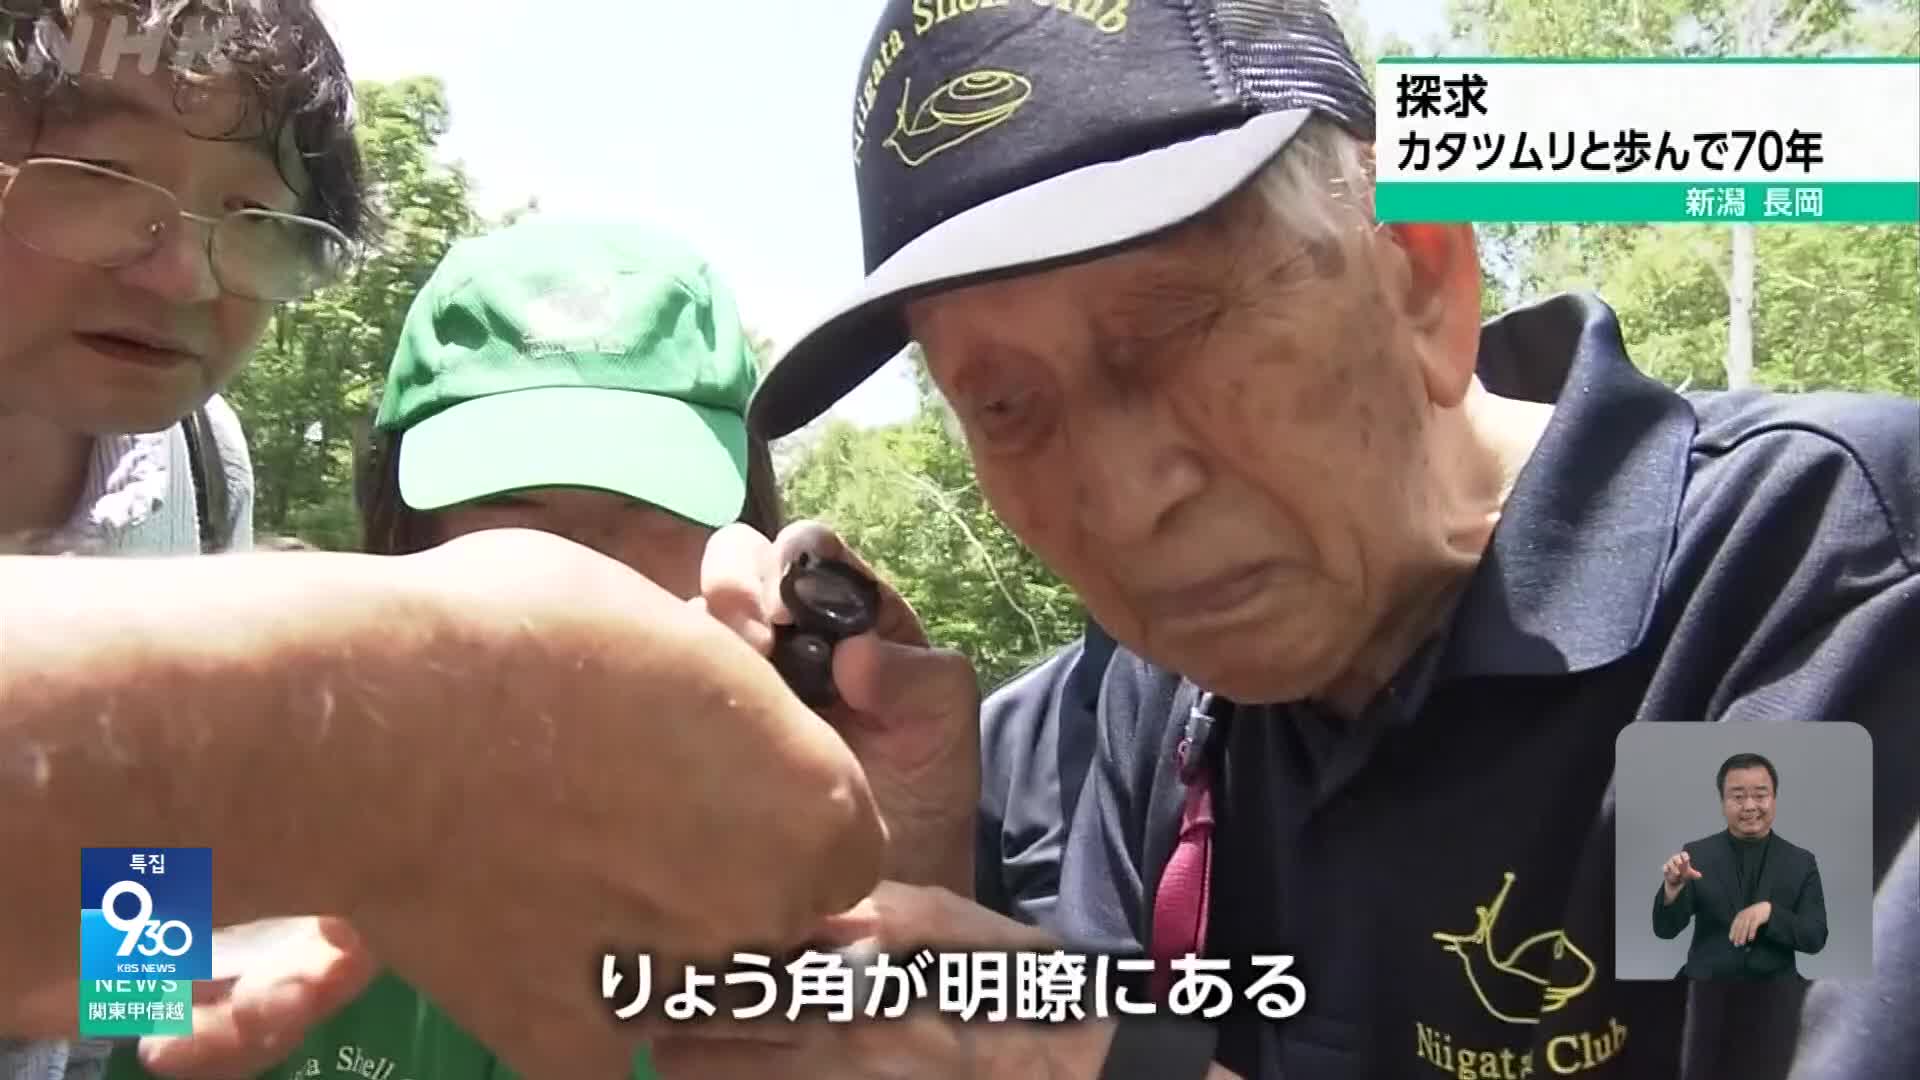 일본, 달팽이와 함께 걸어온 70년 